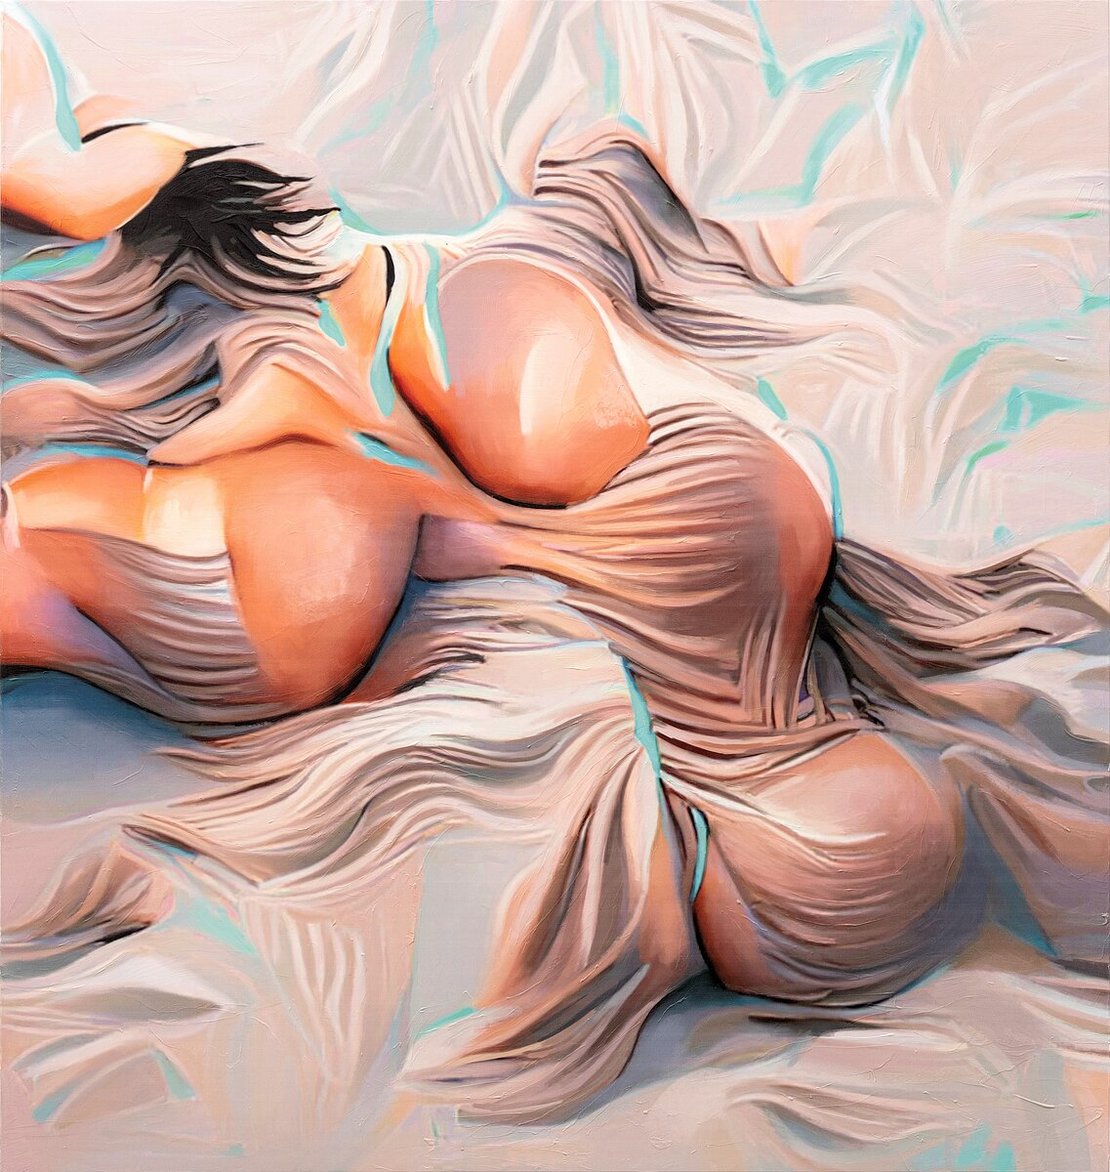 Ein abstraktes Gemälde, das einen scheinbar menschlichen Körper zeigt, der in Laken gehüllt auf einem Bett liegt.